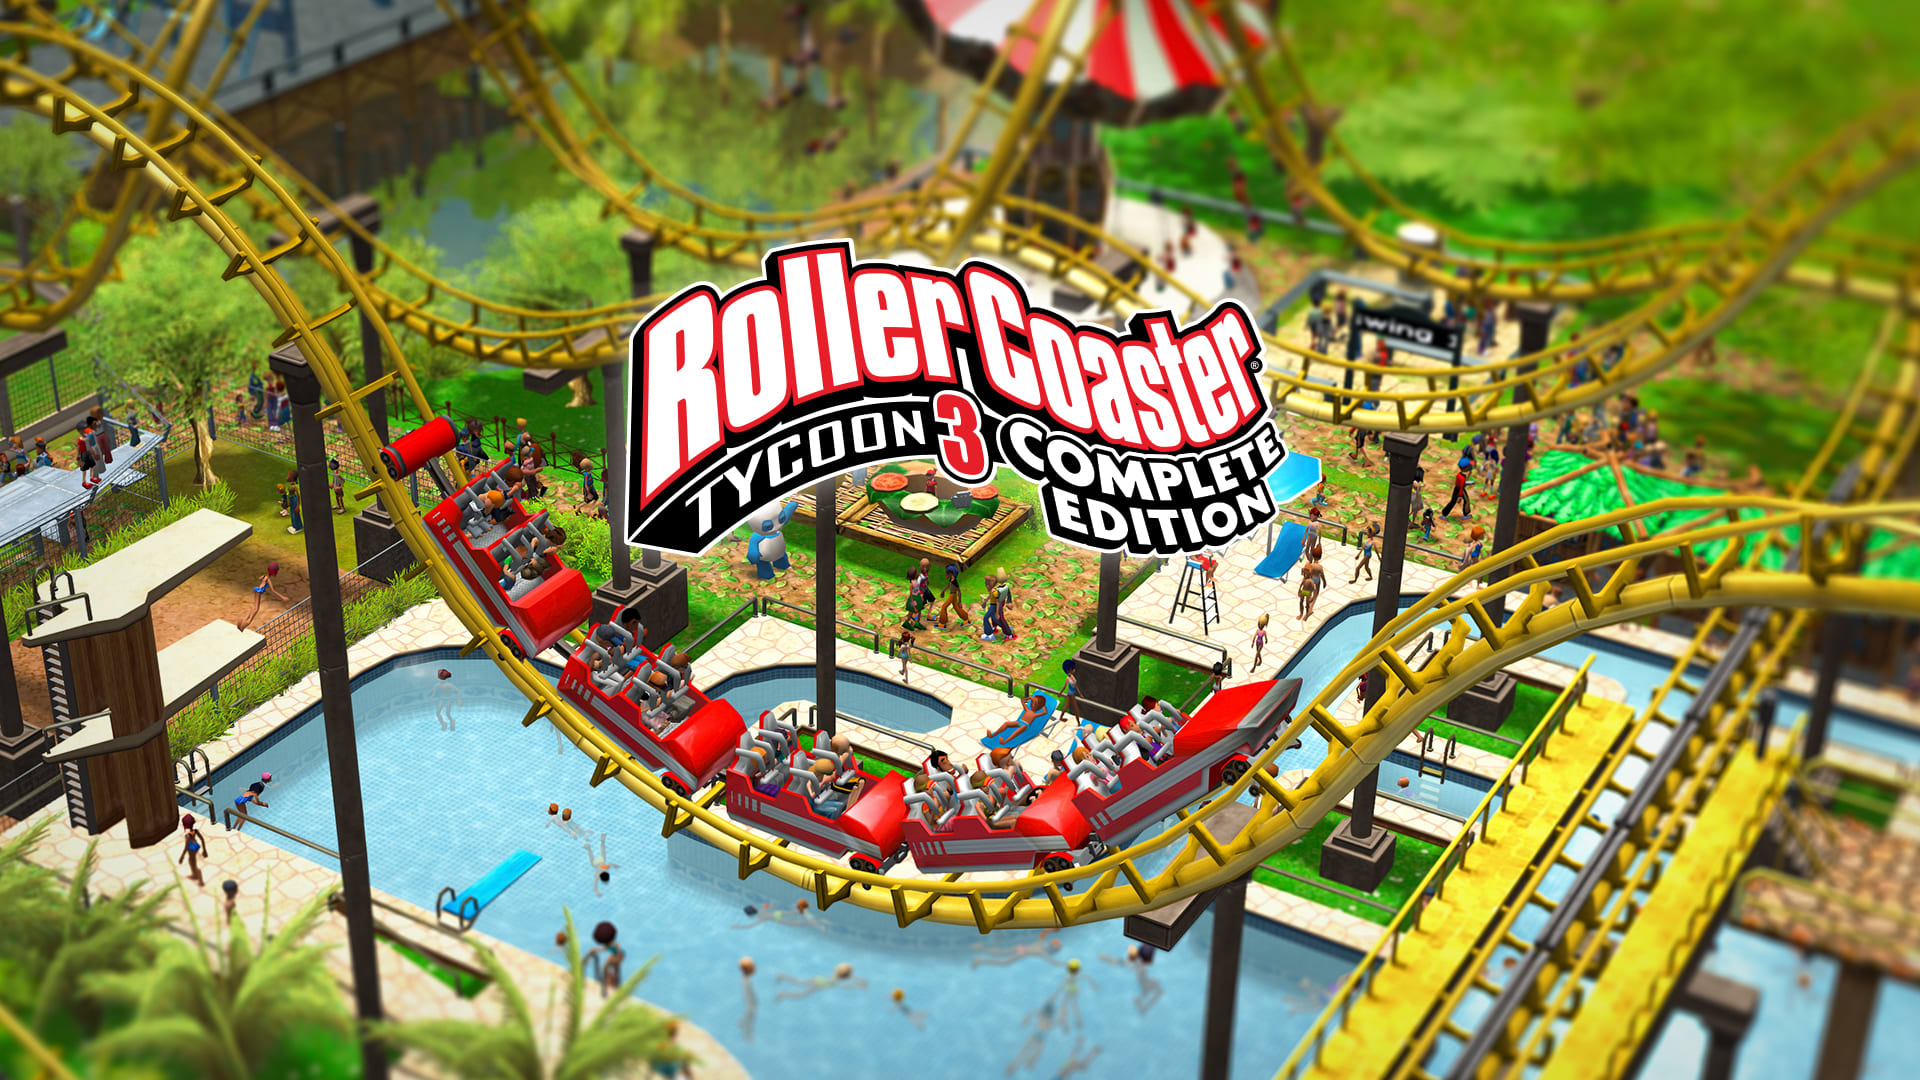 RollerCoaster Tycoon 3 Edición completa 1